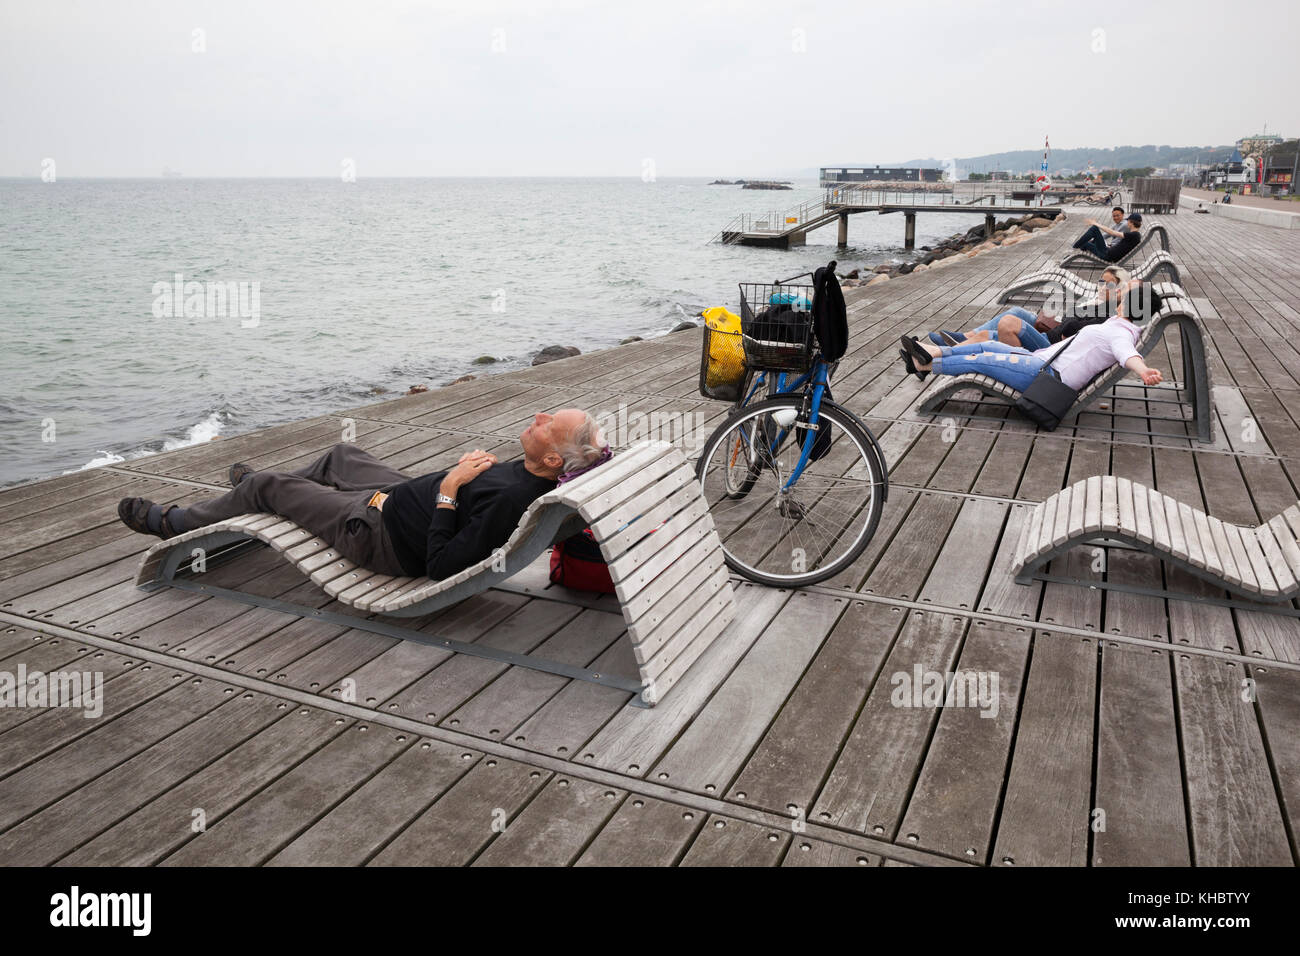 Menschen entspannen auf Liegestühlen neben der Meerenge von Oresund im Park Groningen, Helsingborg, Scania, Schweden, Europa Stockfoto